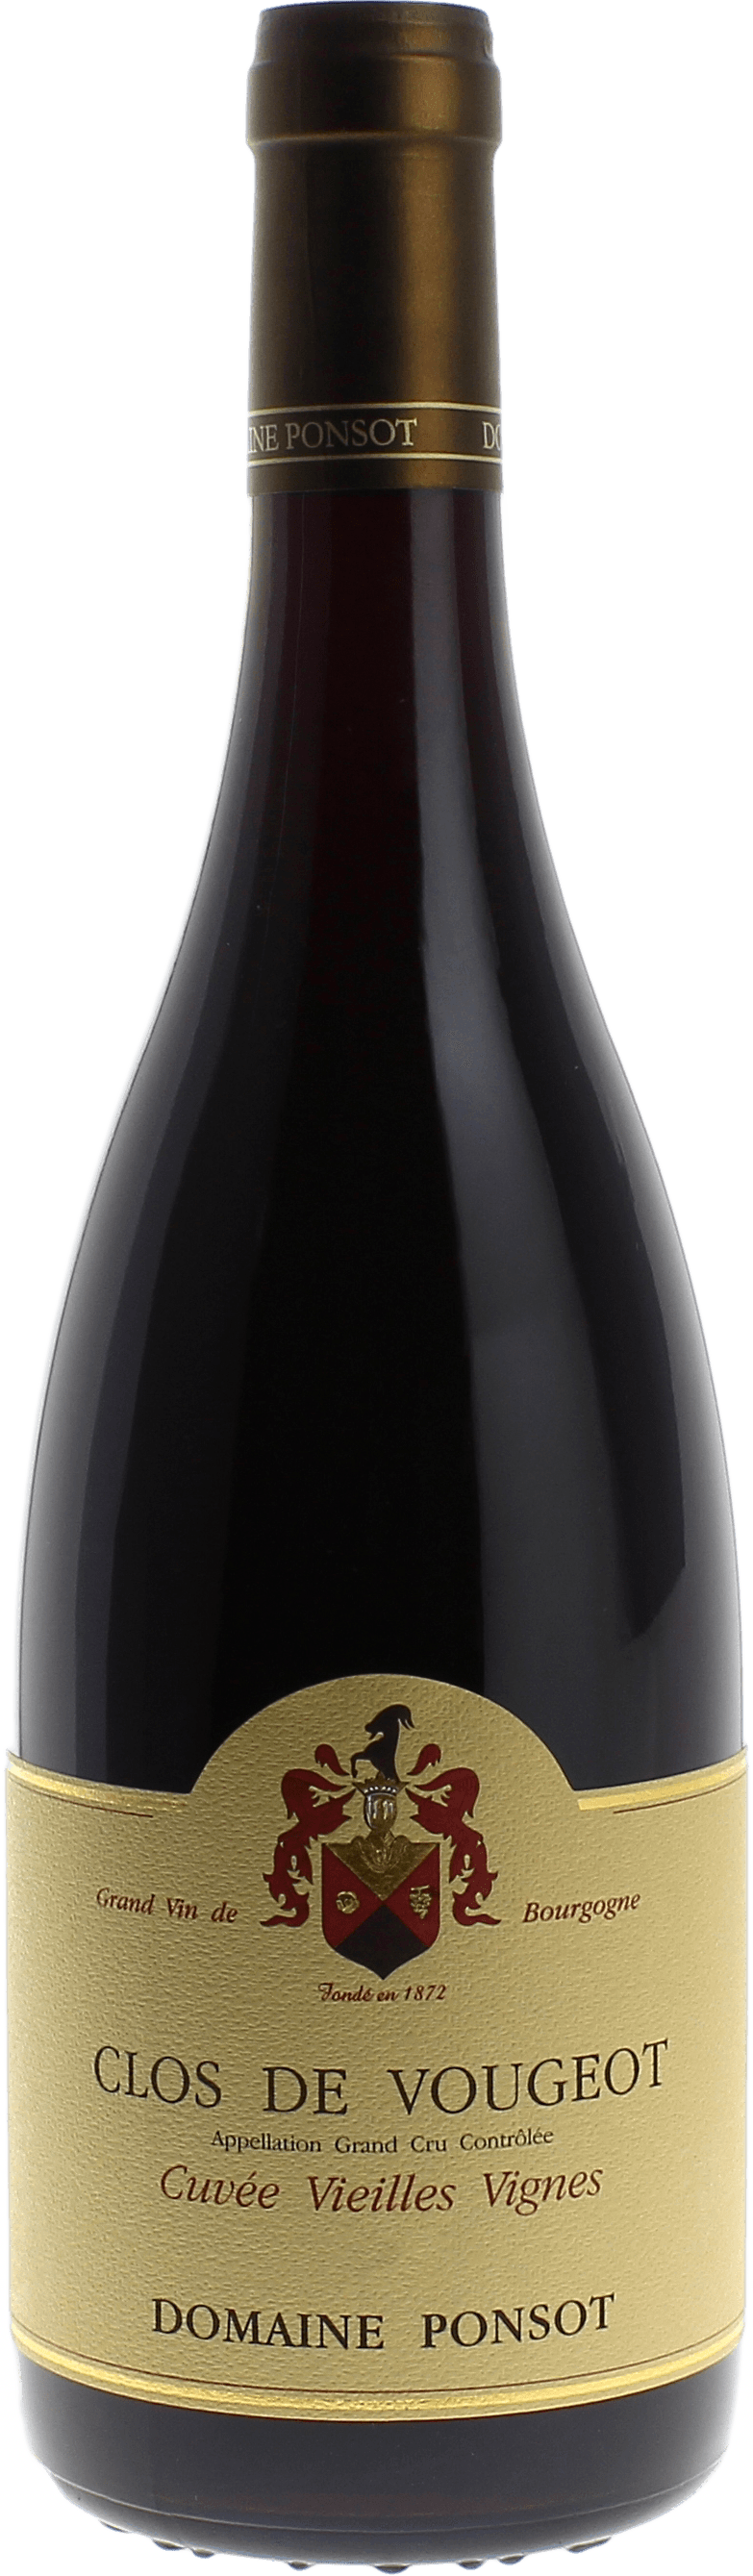 Clos de vougeot grand cru cuve vieilles vignes 2018 Domaine PONSOT, Bourgogne rouge